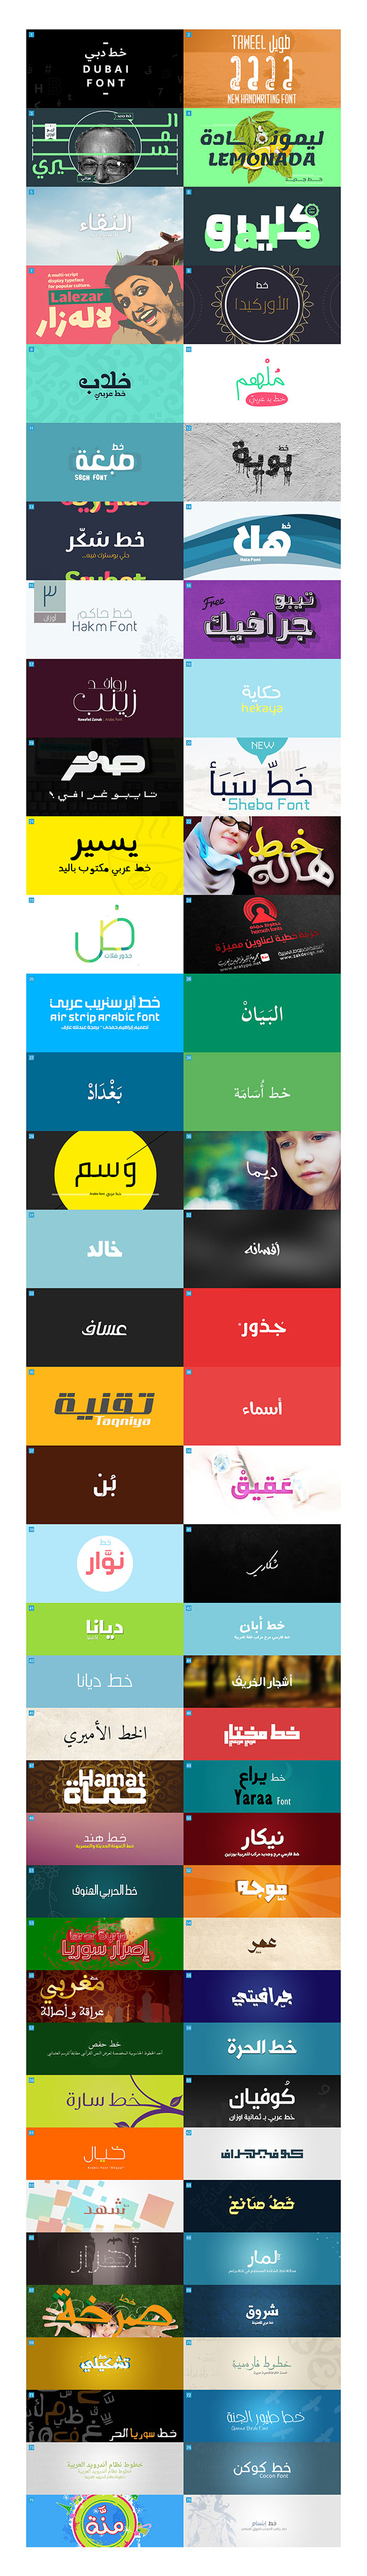 Best 76 Free Arabic Font‬‎s  أفضل 76 خط عربي مجاني